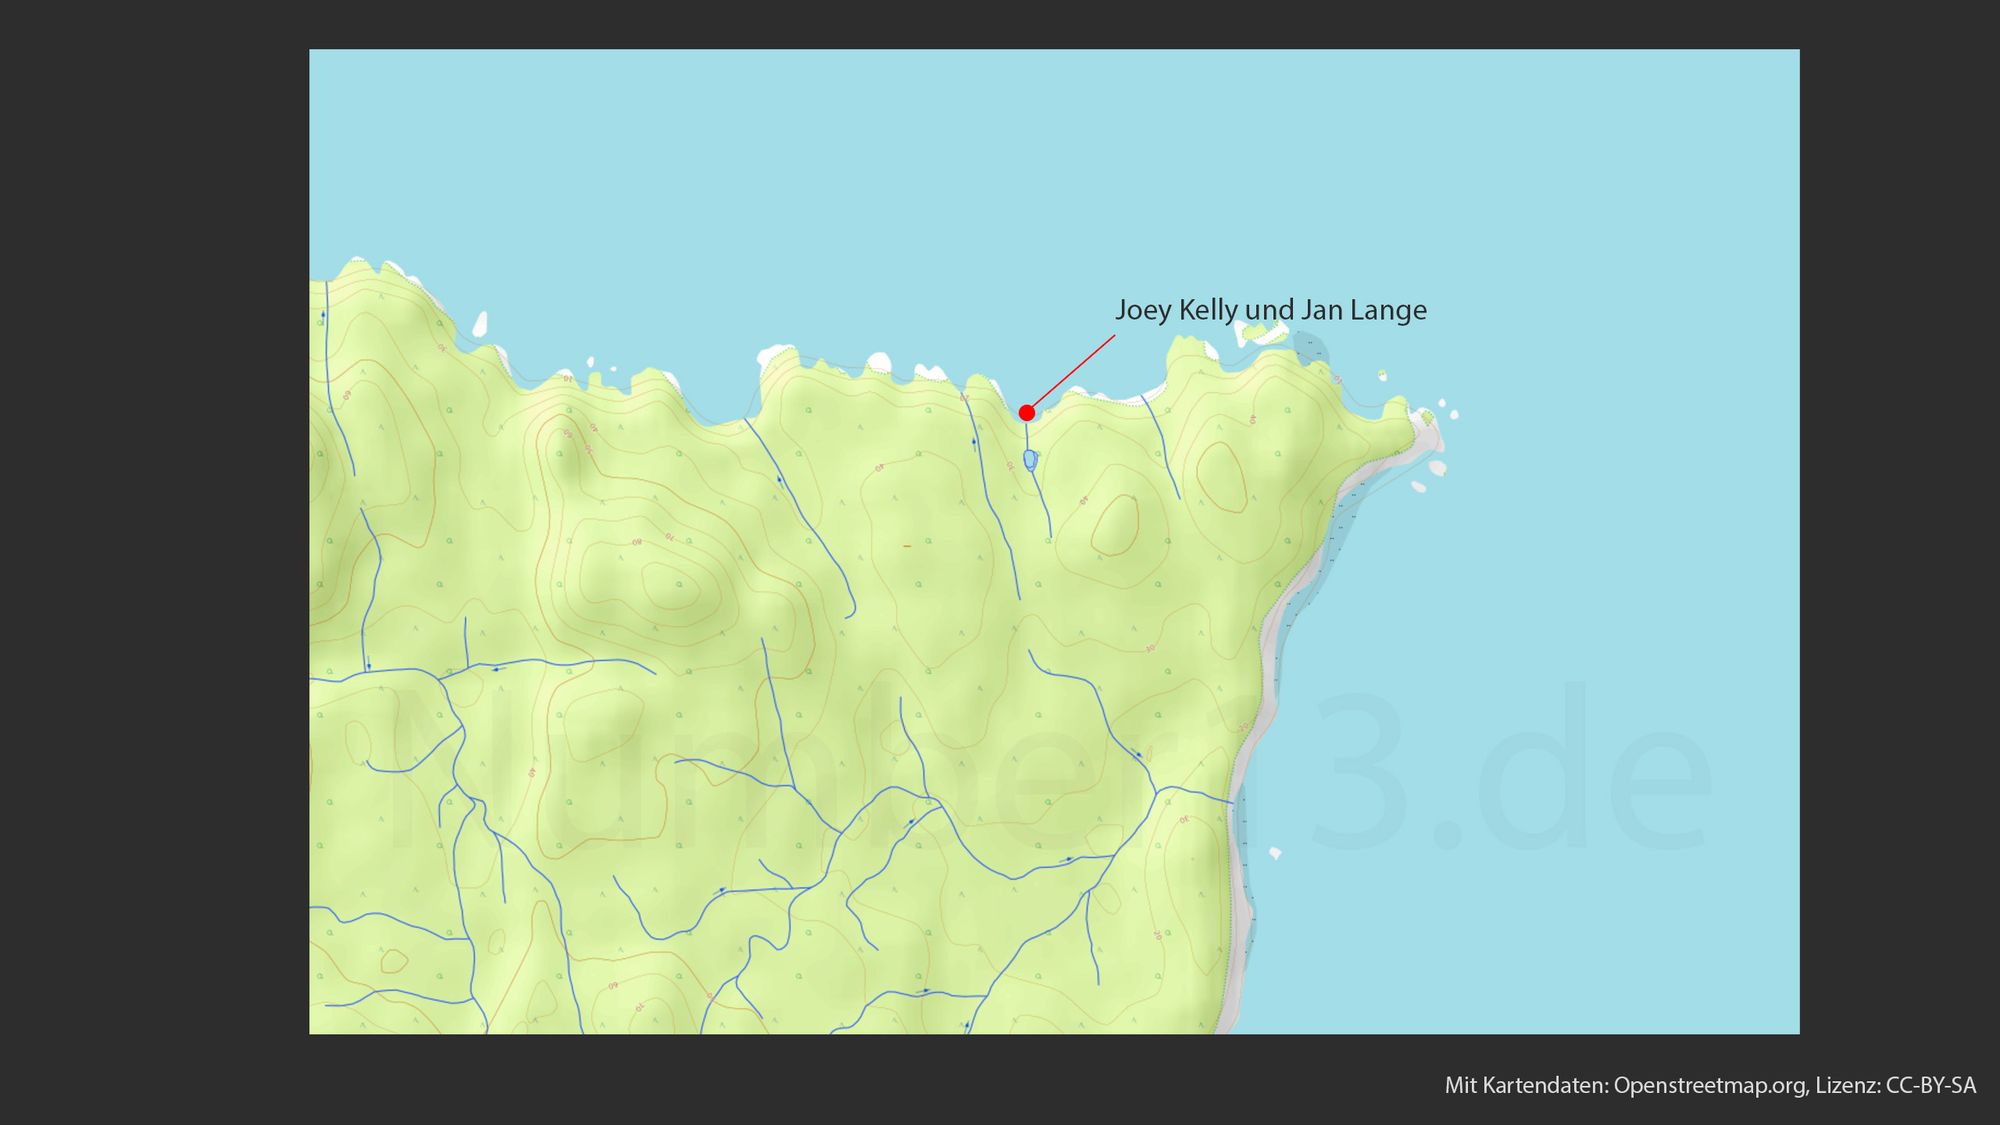 Topografische Karte, die eine hügelige Landschaft mit vielen Höhenlinien darstellt. Ein roter Punkt, markiert mit einem Pfeil, zeigt auf eine Stelle mit der Beschriftung "Joey Kelly und Jan Lange". Blaue Linien, die wahrscheinlich Flüsse oder Bäche darstellen, durchziehen die Karte. Der Umriss einer Küstenlinie ist an der rechten Seite sichtbar. Die Karte trägt die Beschriftung "Mit Kartendaten: Openstreetmap.org, Lizenz: CC-BY-SA" am unteren Rand.